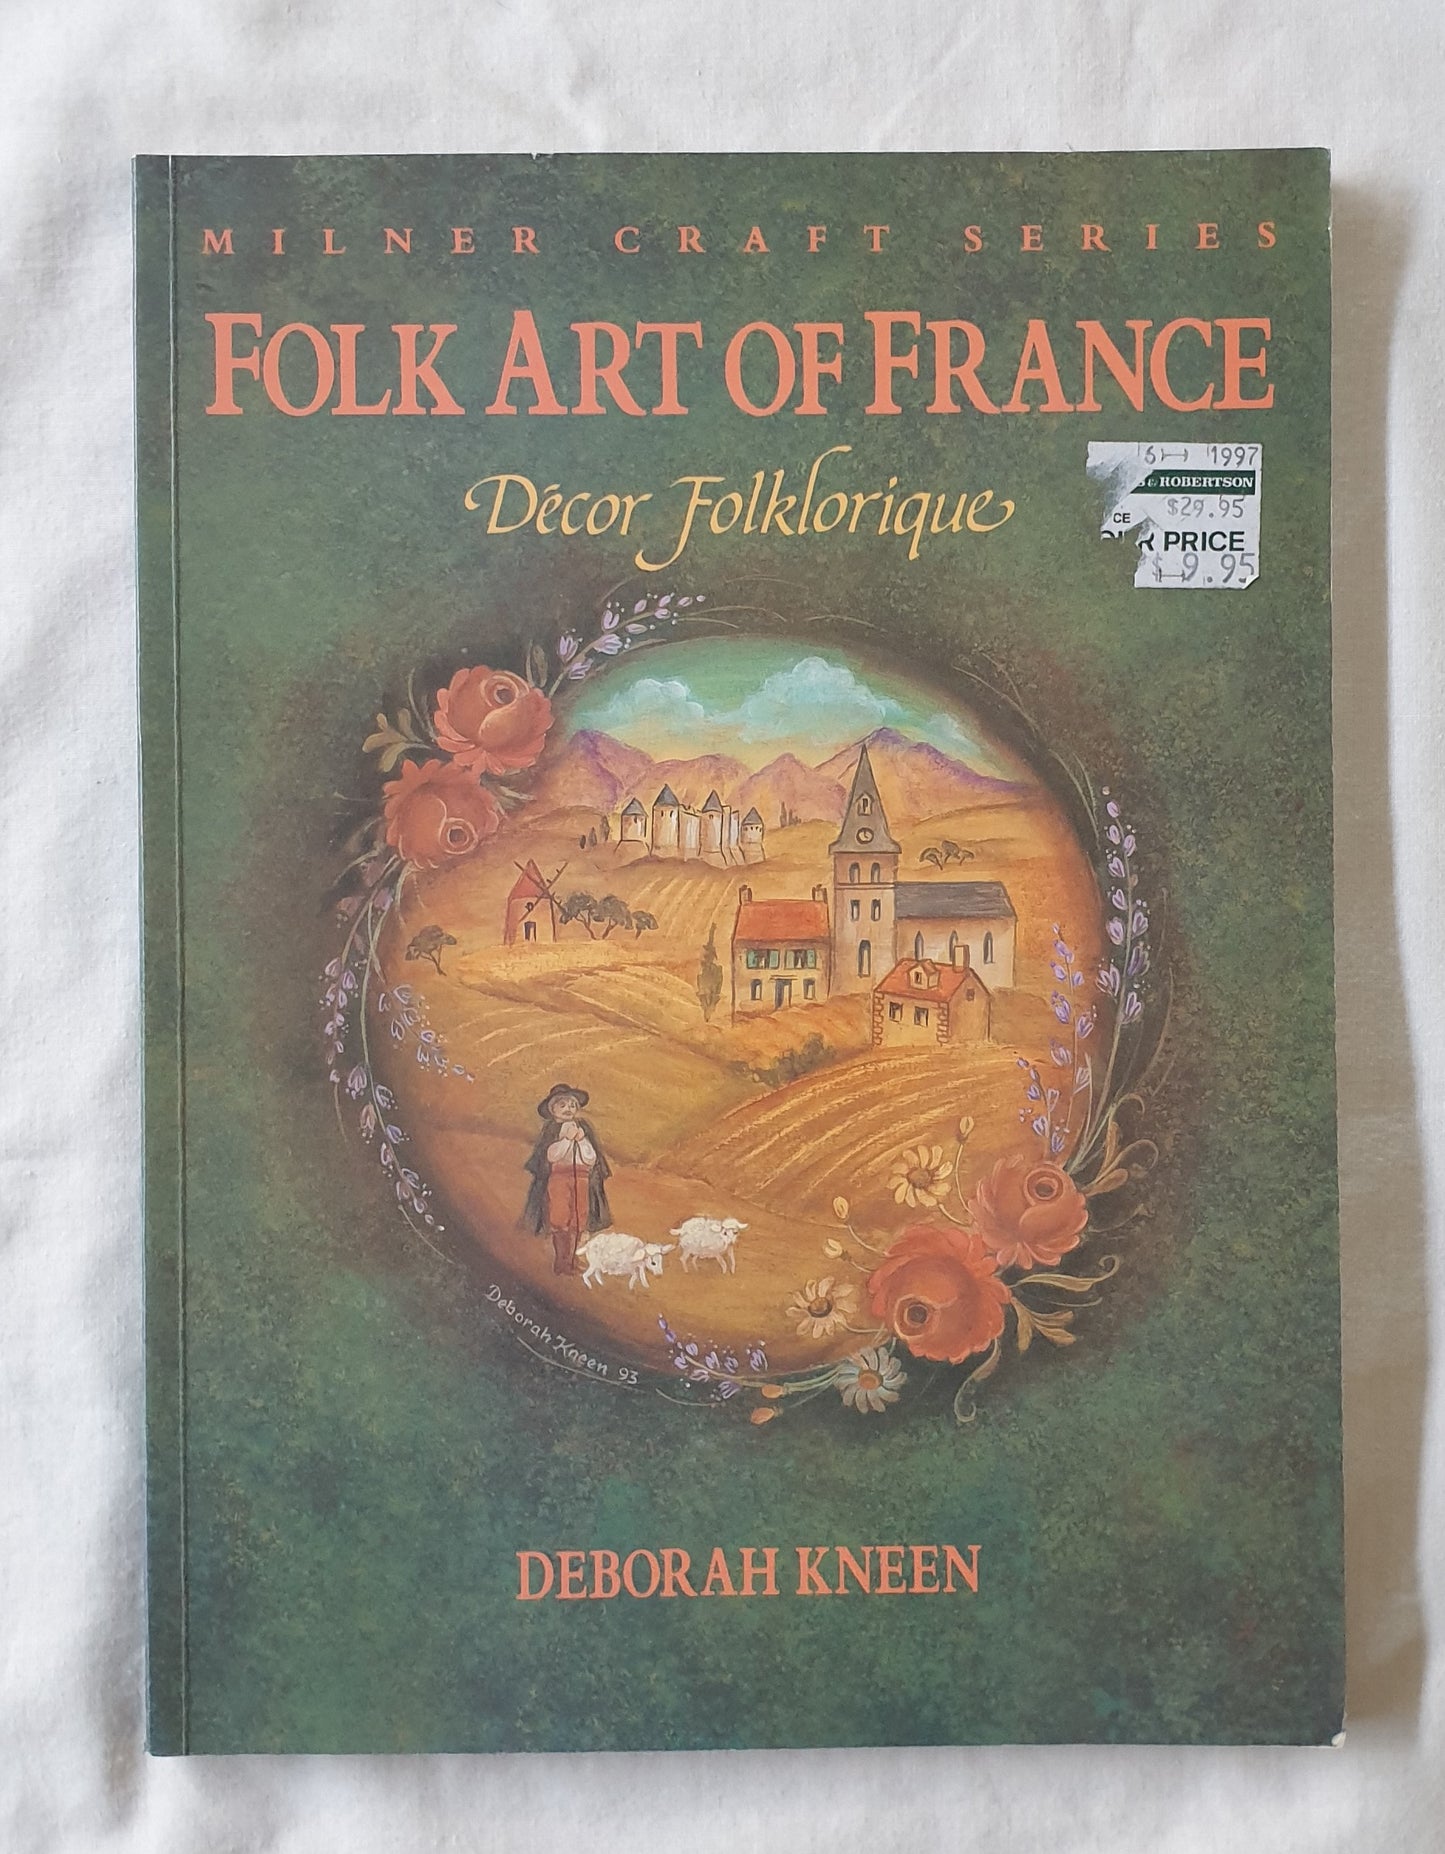 Folk Art of France  Decor Folklorique  by Deborah Kneen  (Milner Craft Series)